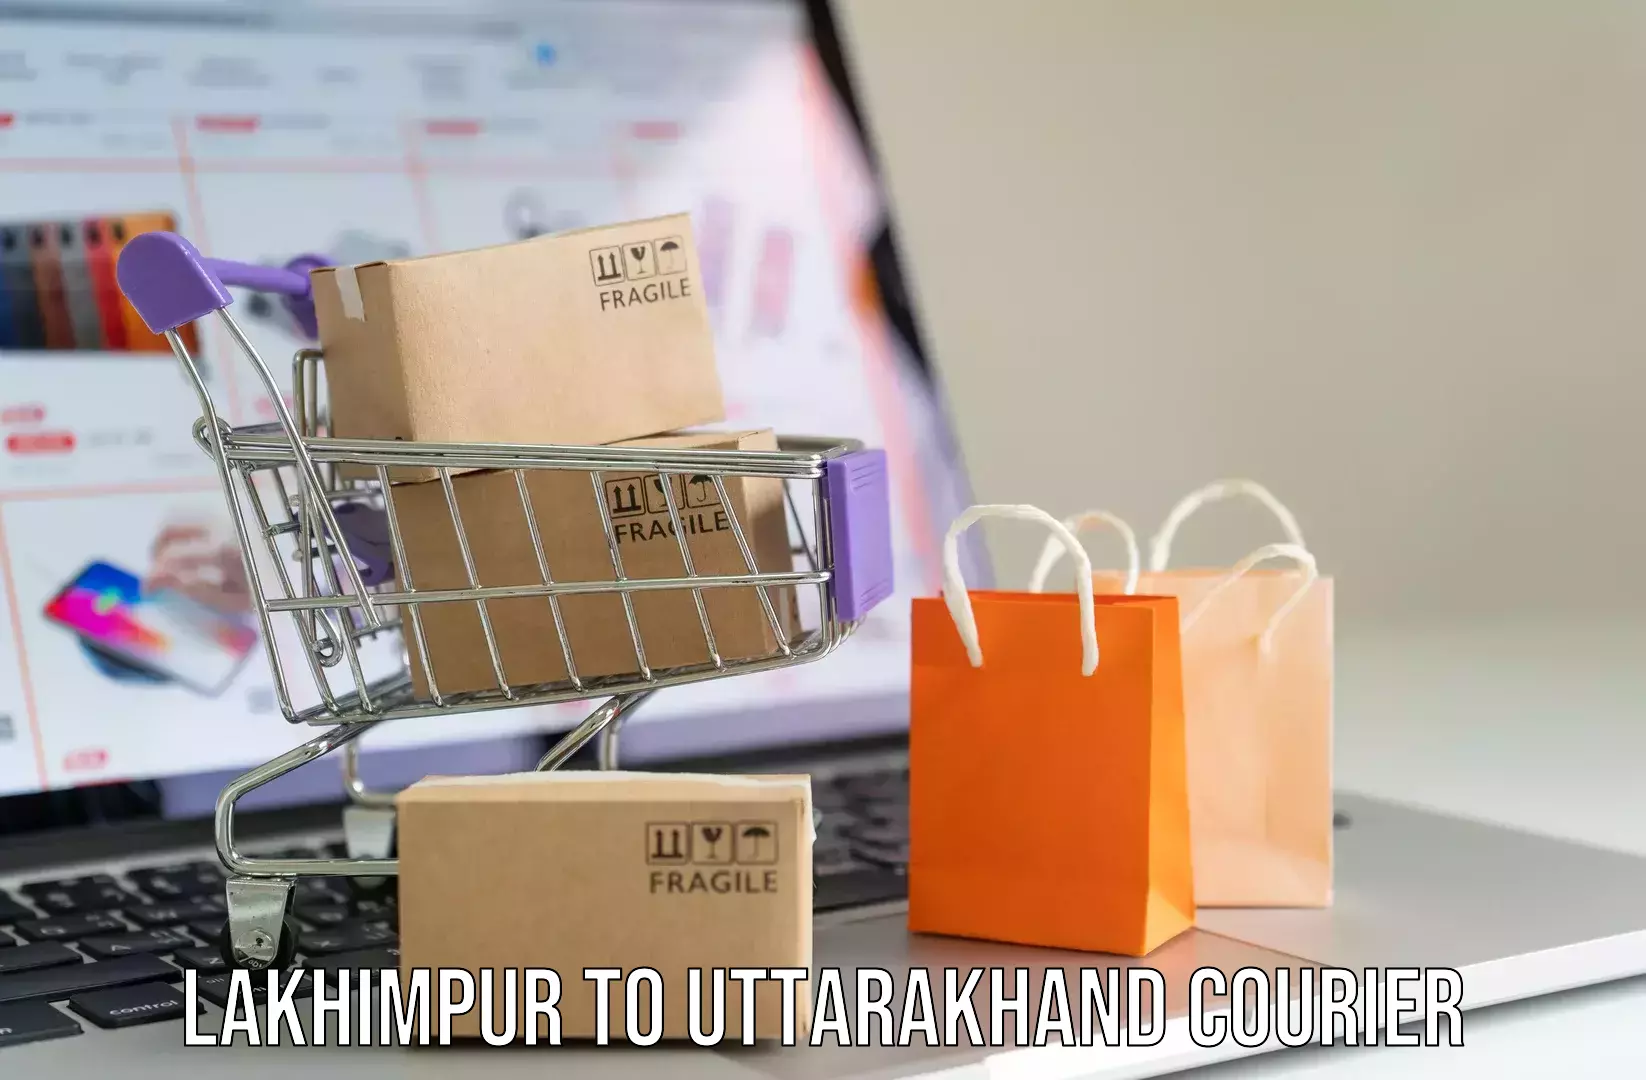 Luggage transfer service Lakhimpur to Uttarkashi